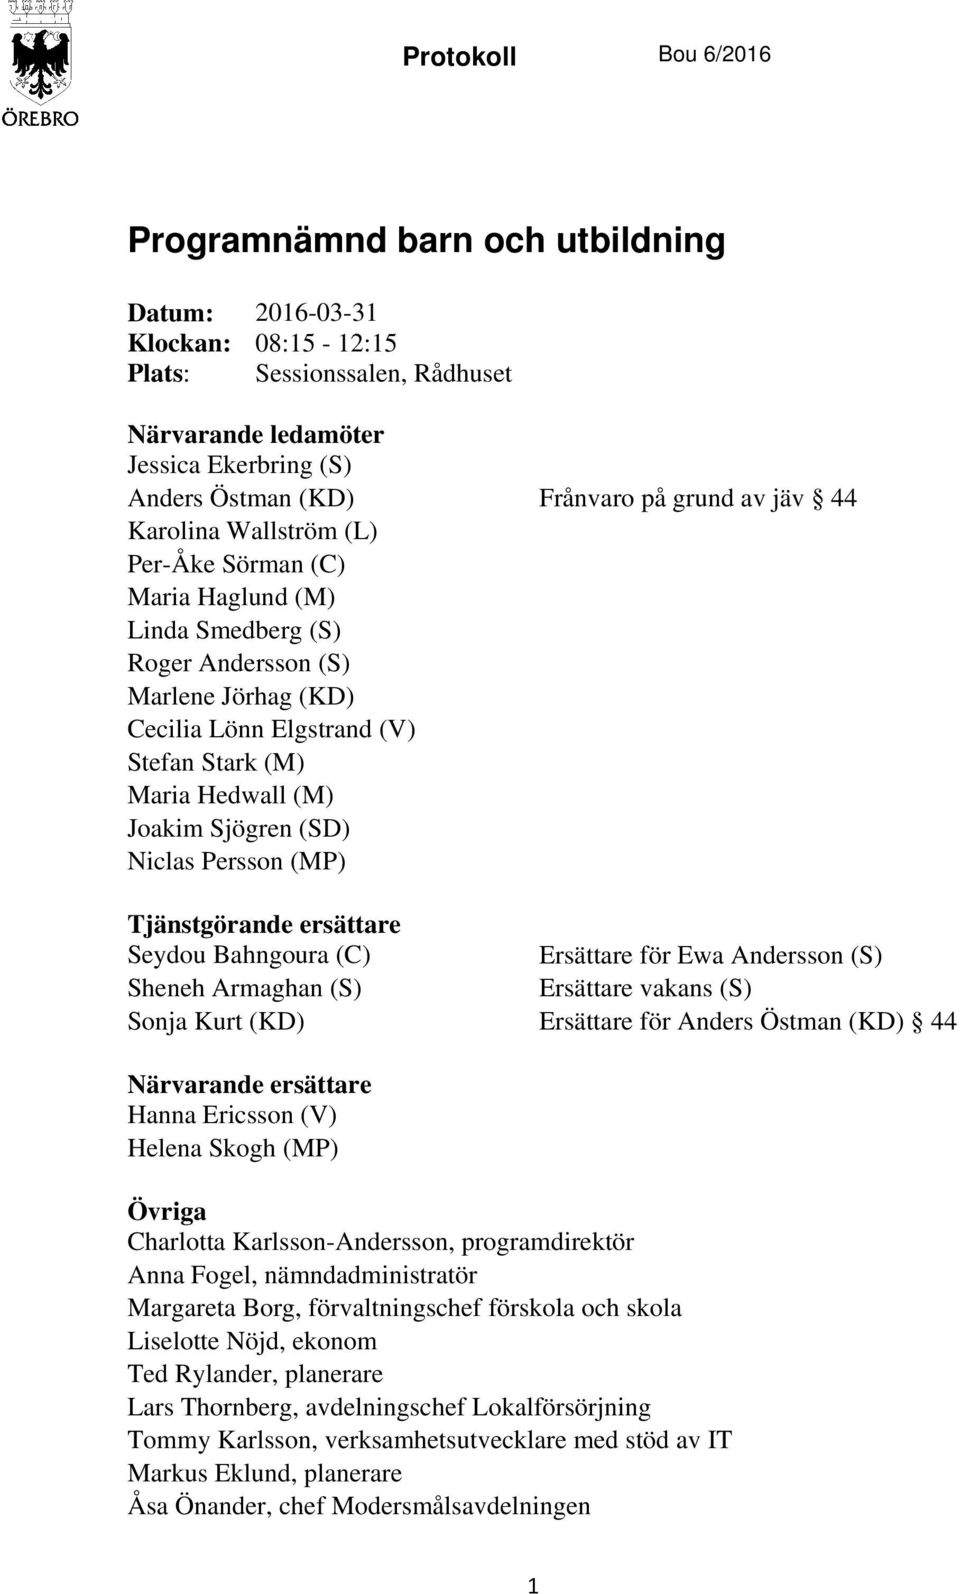 (SD) Niclas Persson (MP) Tjänstgörande ersättare Seydou Bahngoura (C) Ersättare för Ewa Andersson (S) Sheneh Armaghan (S) Ersättare vakans (S) Sonja Kurt (KD) Ersättare för Anders Östman (KD) 44